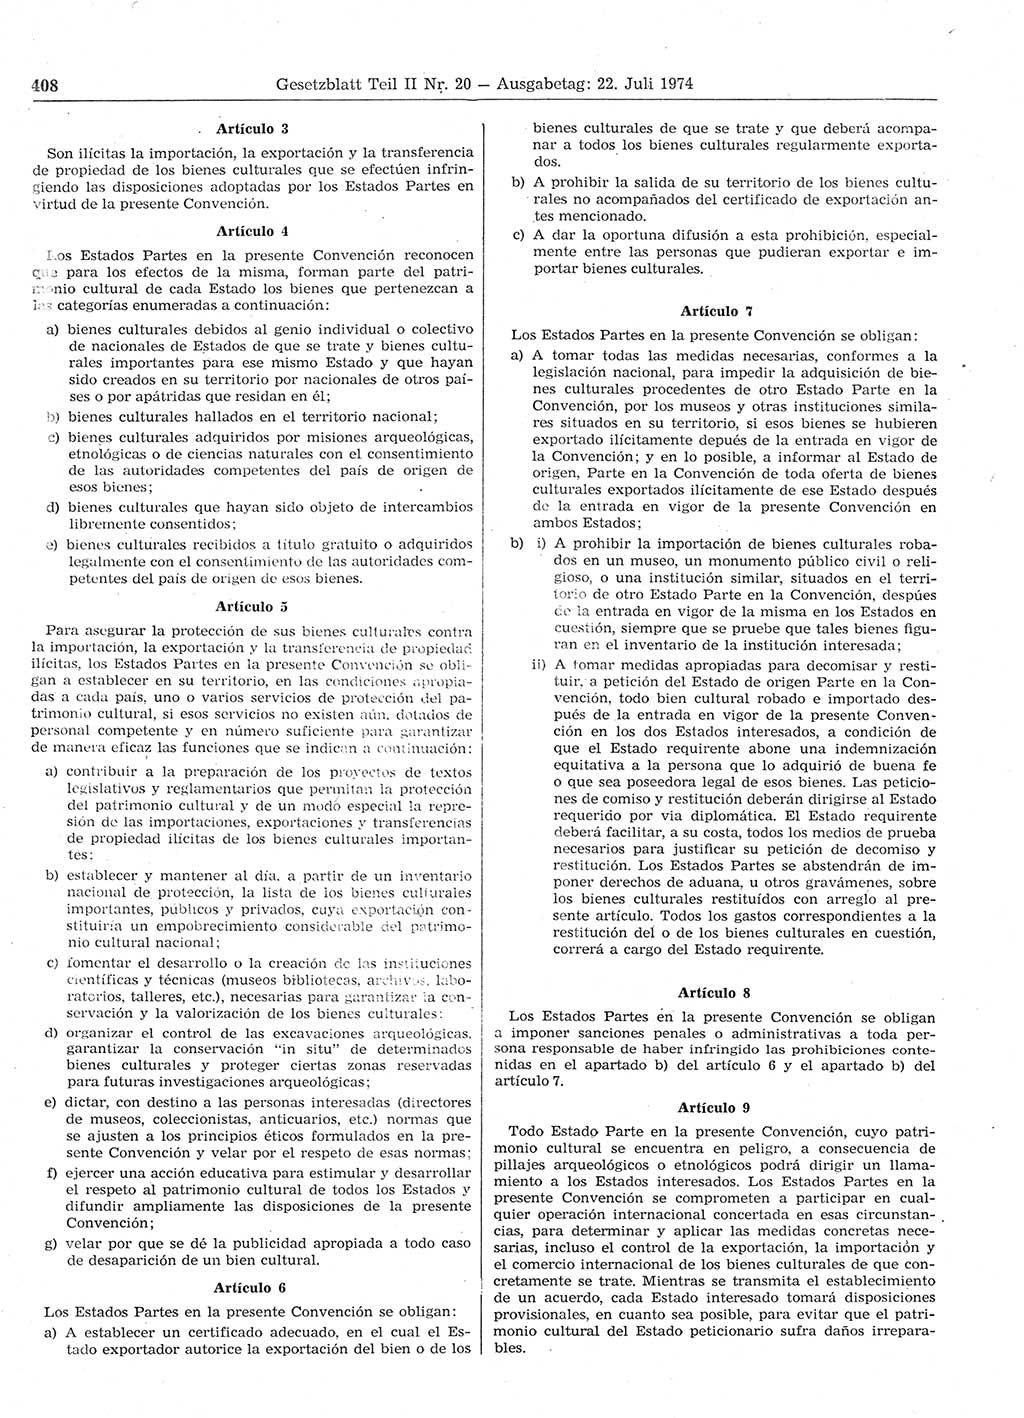 Gesetzblatt (GBl.) der Deutschen Demokratischen Republik (DDR) Teil ⅠⅠ 1974, Seite 408 (GBl. DDR ⅠⅠ 1974, S. 408)